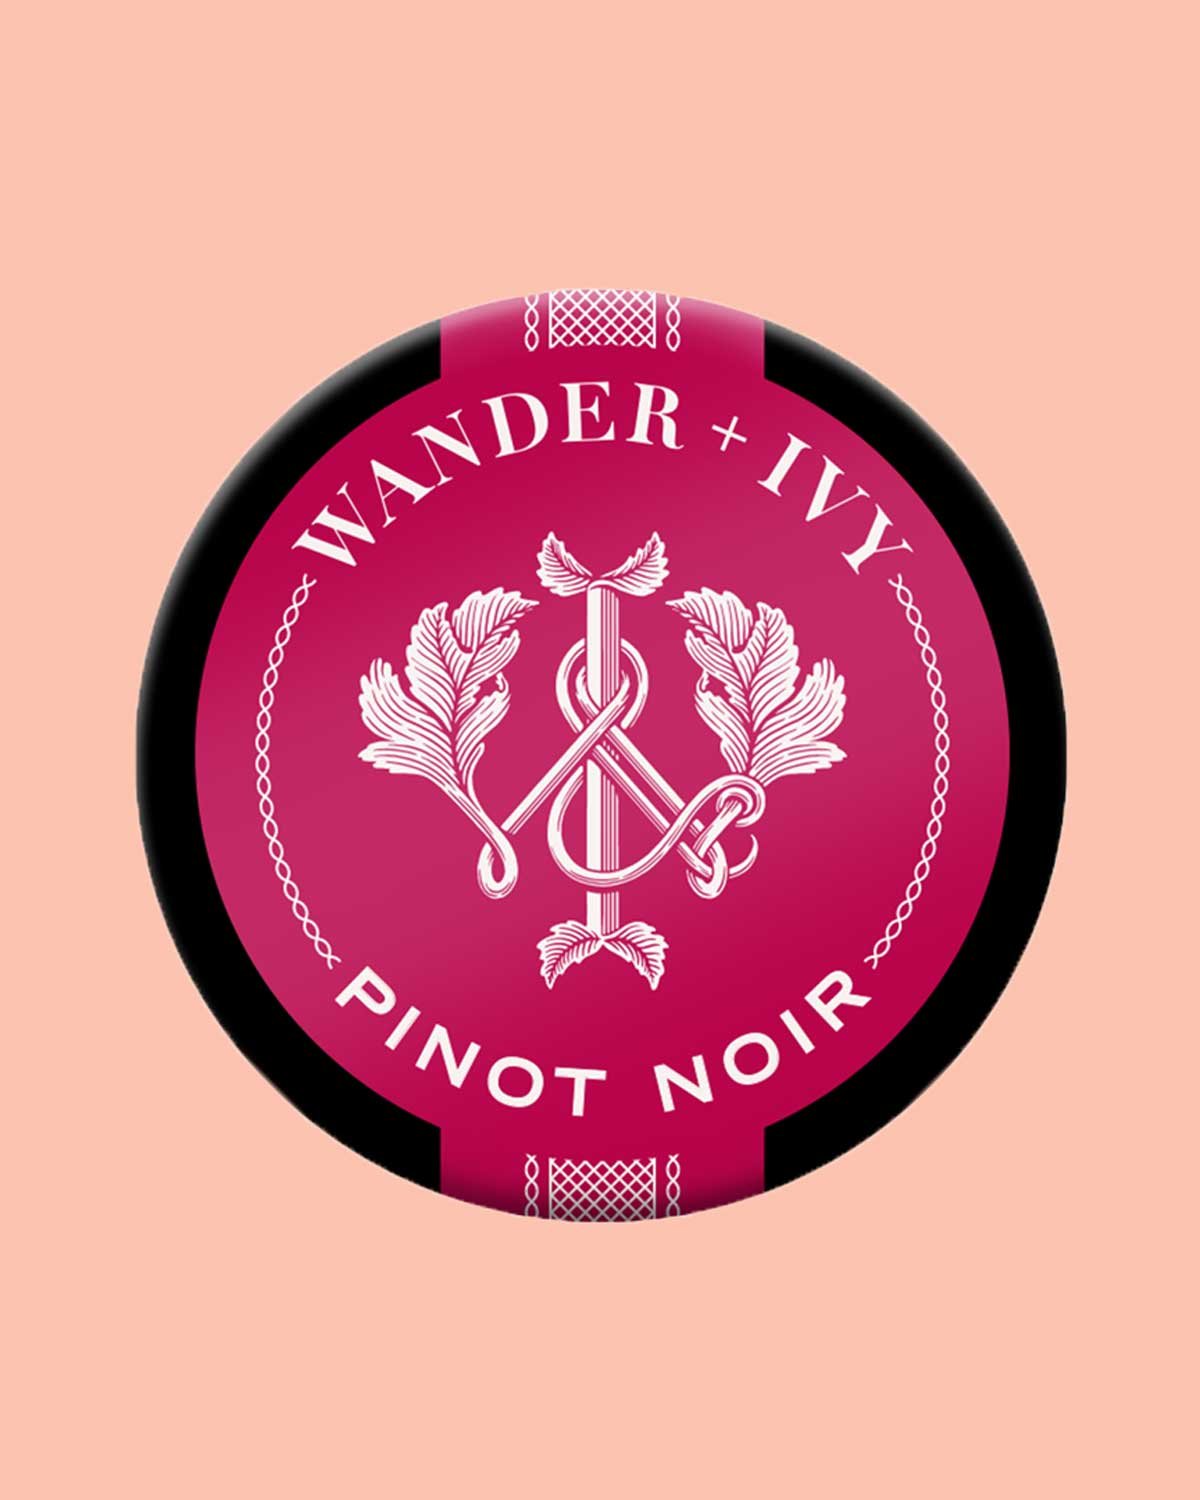 001-04612-Wander-+-Ivy-Top-down-render